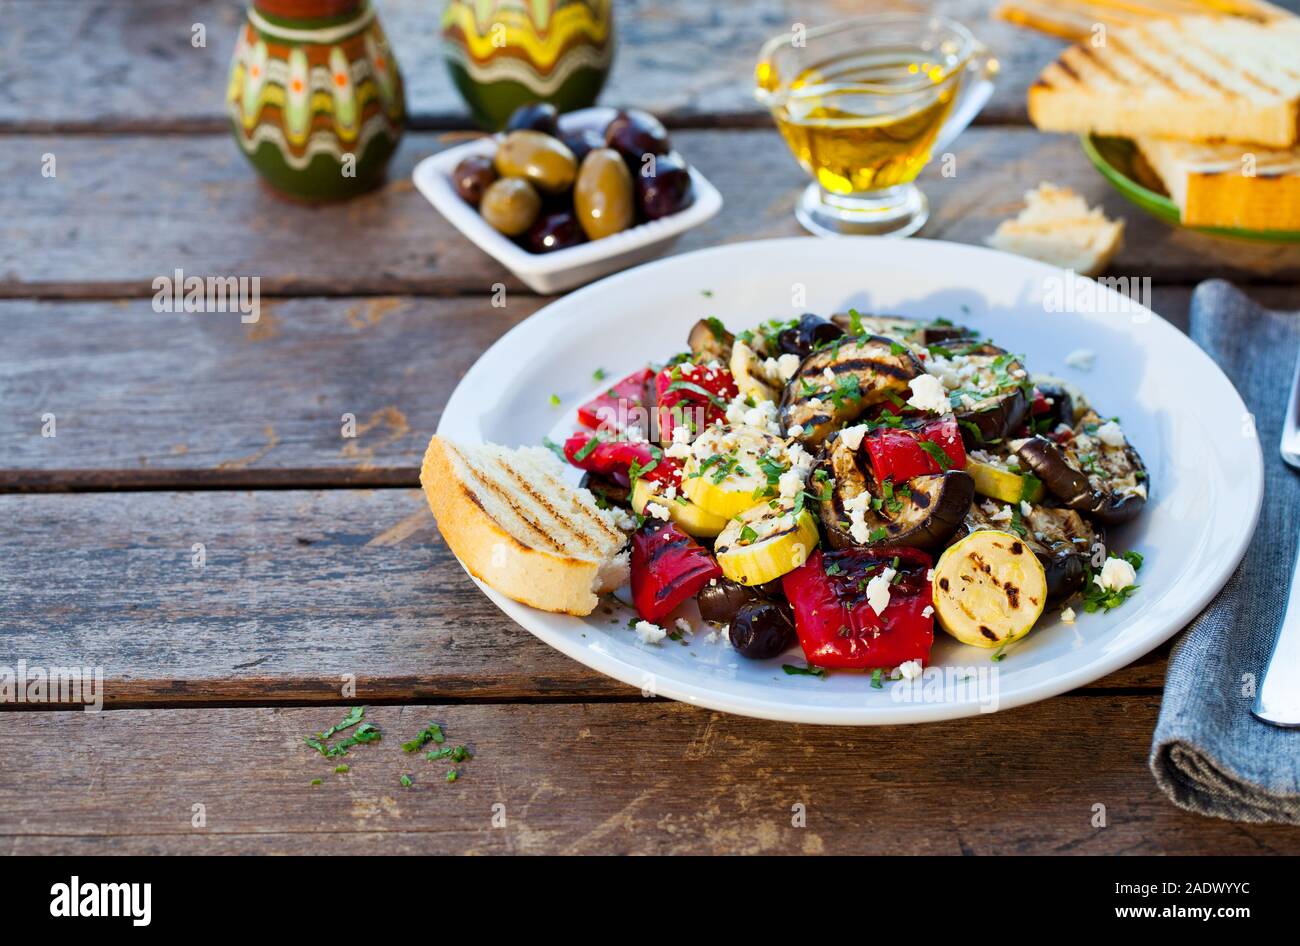 Gegrilltes Gemüse Salat mit Feta Käse in weiße Platte. Holz- Hintergrund.  Platz kopieren Stockfotografie - Alamy